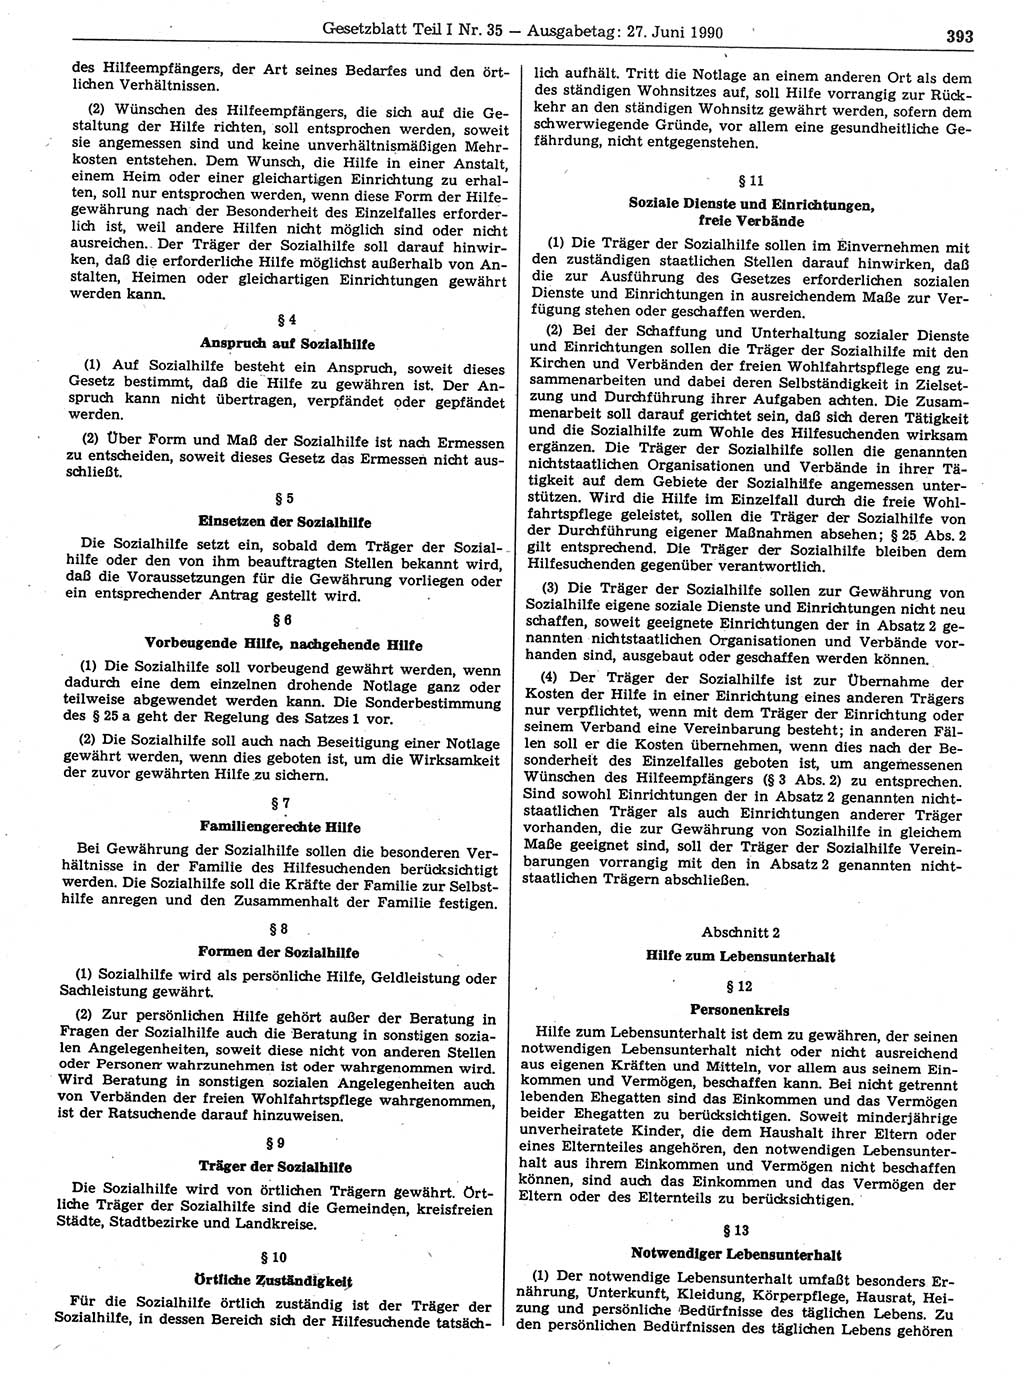 Gesetzblatt (GBl.) der Deutschen Demokratischen Republik (DDR) Teil Ⅰ 1990, Seite 393 (GBl. DDR Ⅰ 1990, S. 393)